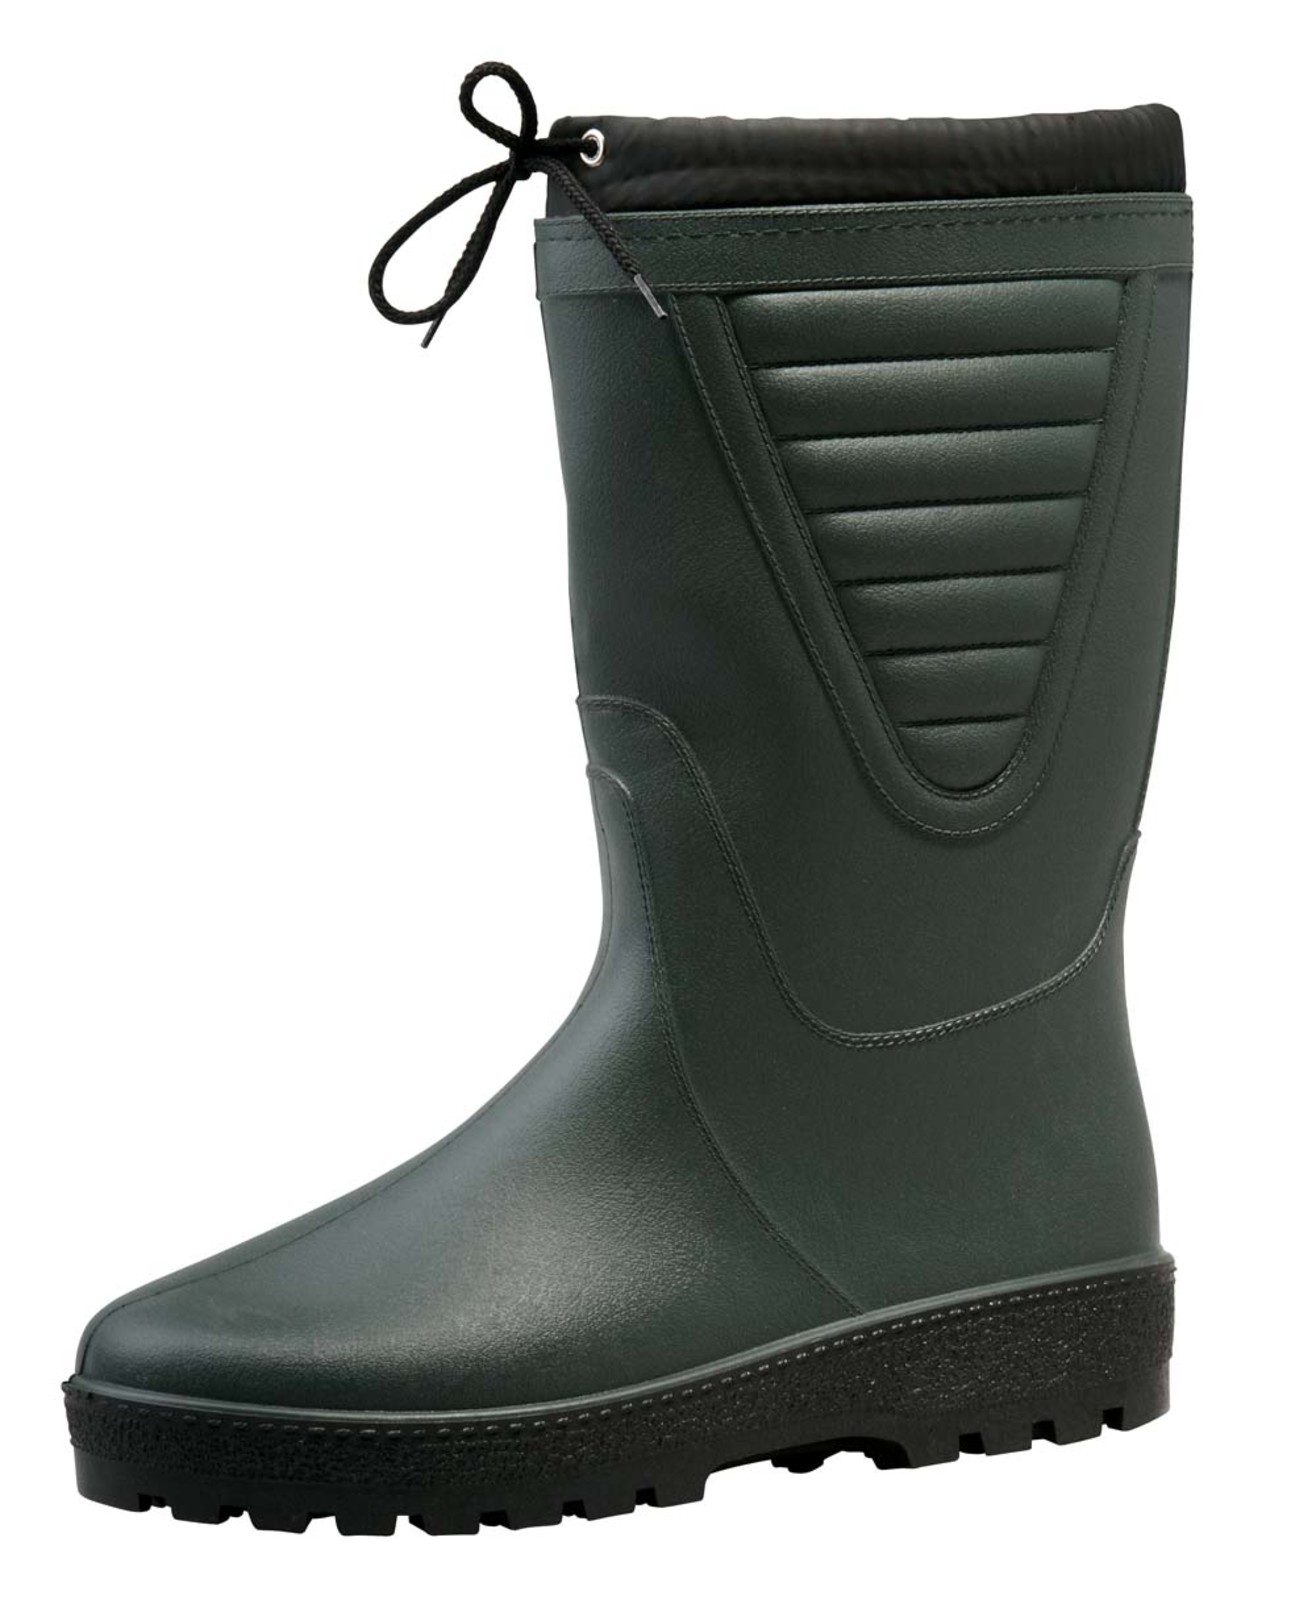 Zateplené čižmy Boots Polar - veľkosť: 43, farba: zelená